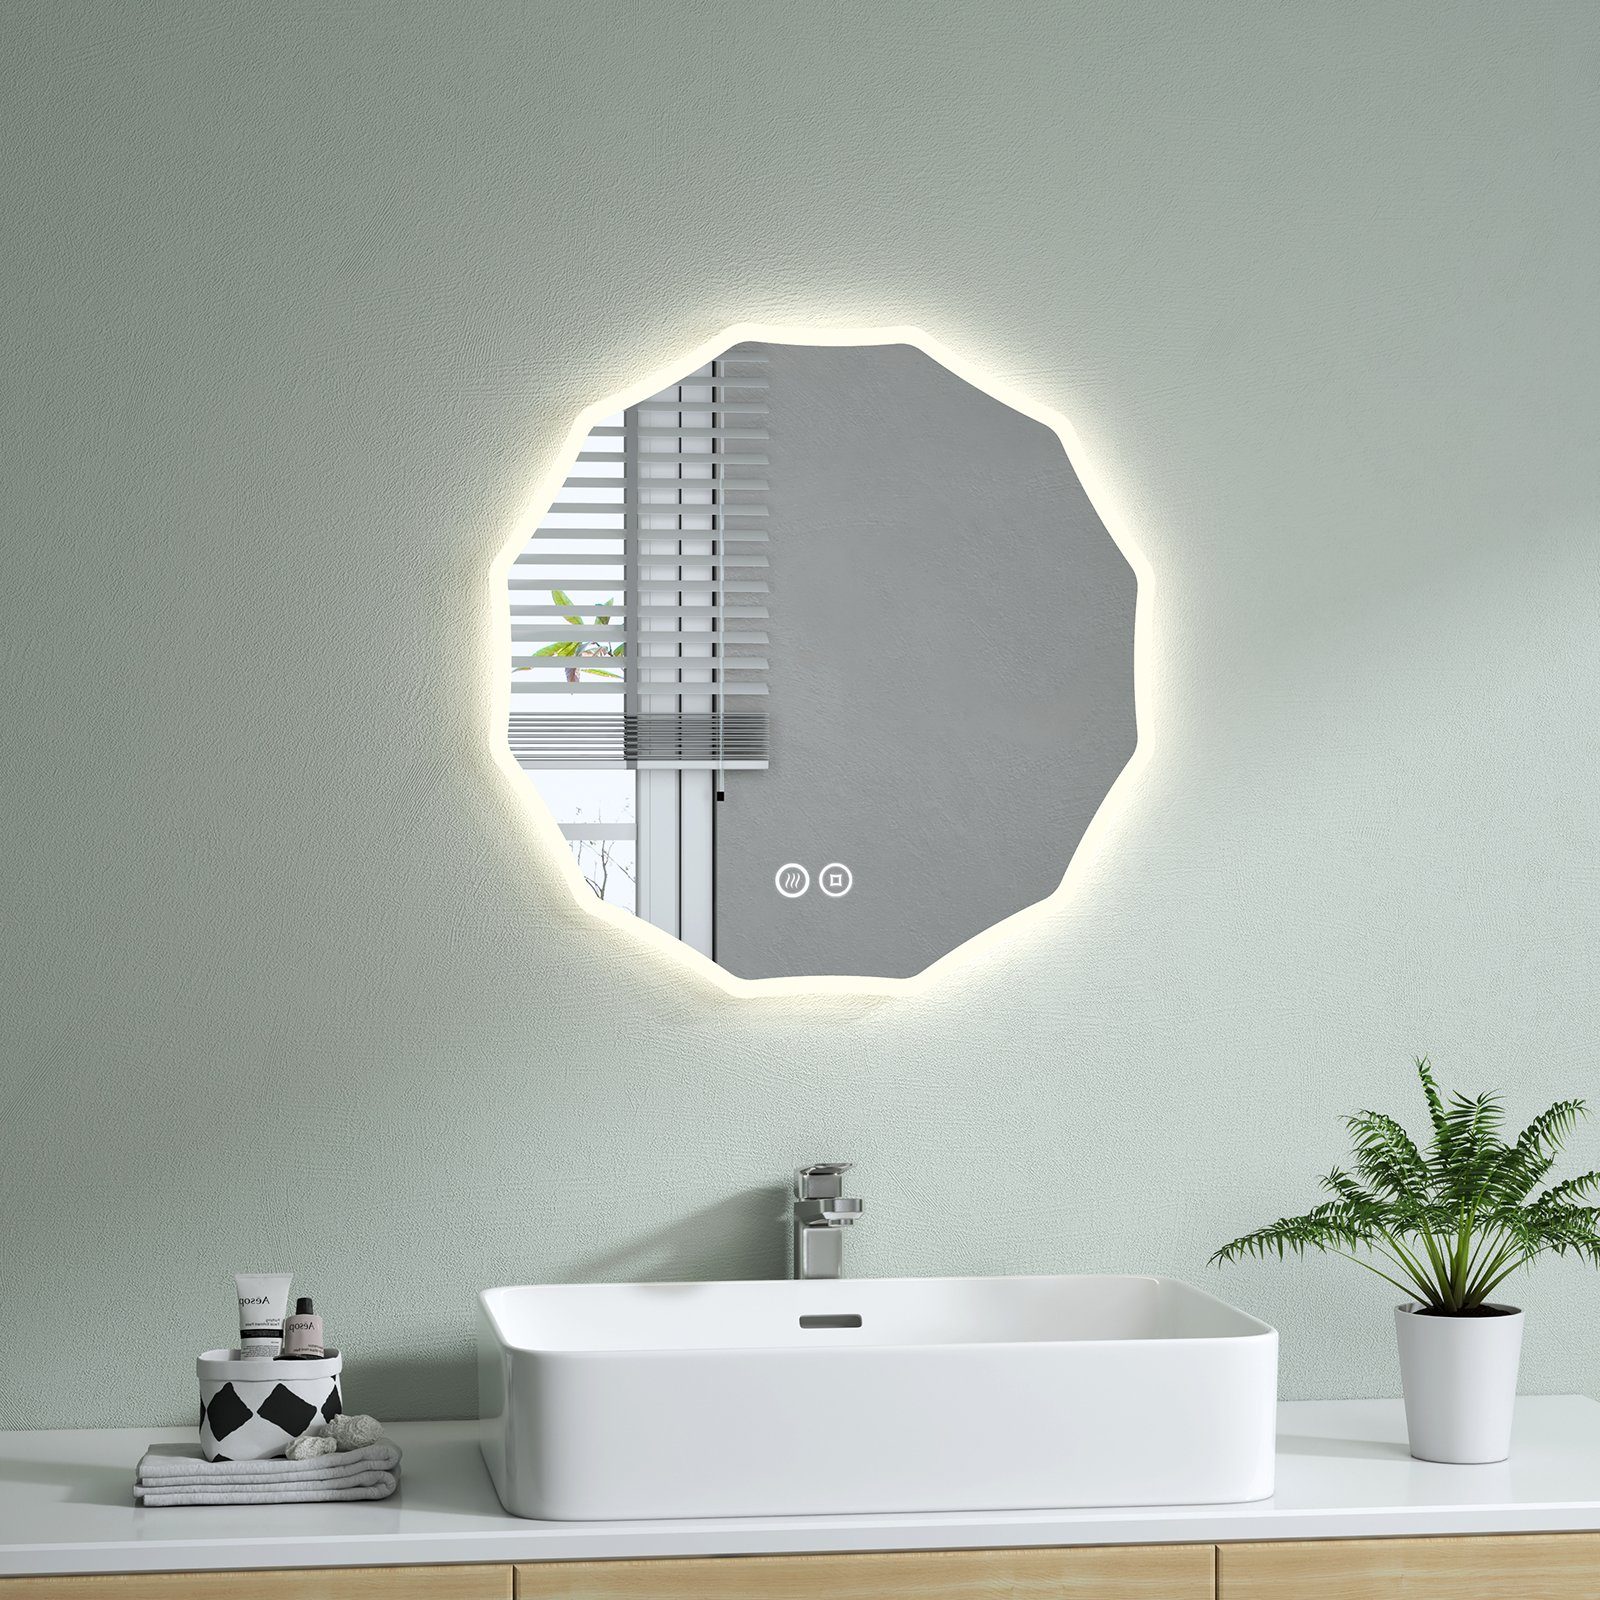 S'AFIELINA Badspiegel Runder Badspiegel mit Beleuchtung LED Kosmetikspiegel  Wandspiegel, Touchschalter,Beschlagfrei,Neutralweiß 4300K,Wandmontage,IP44